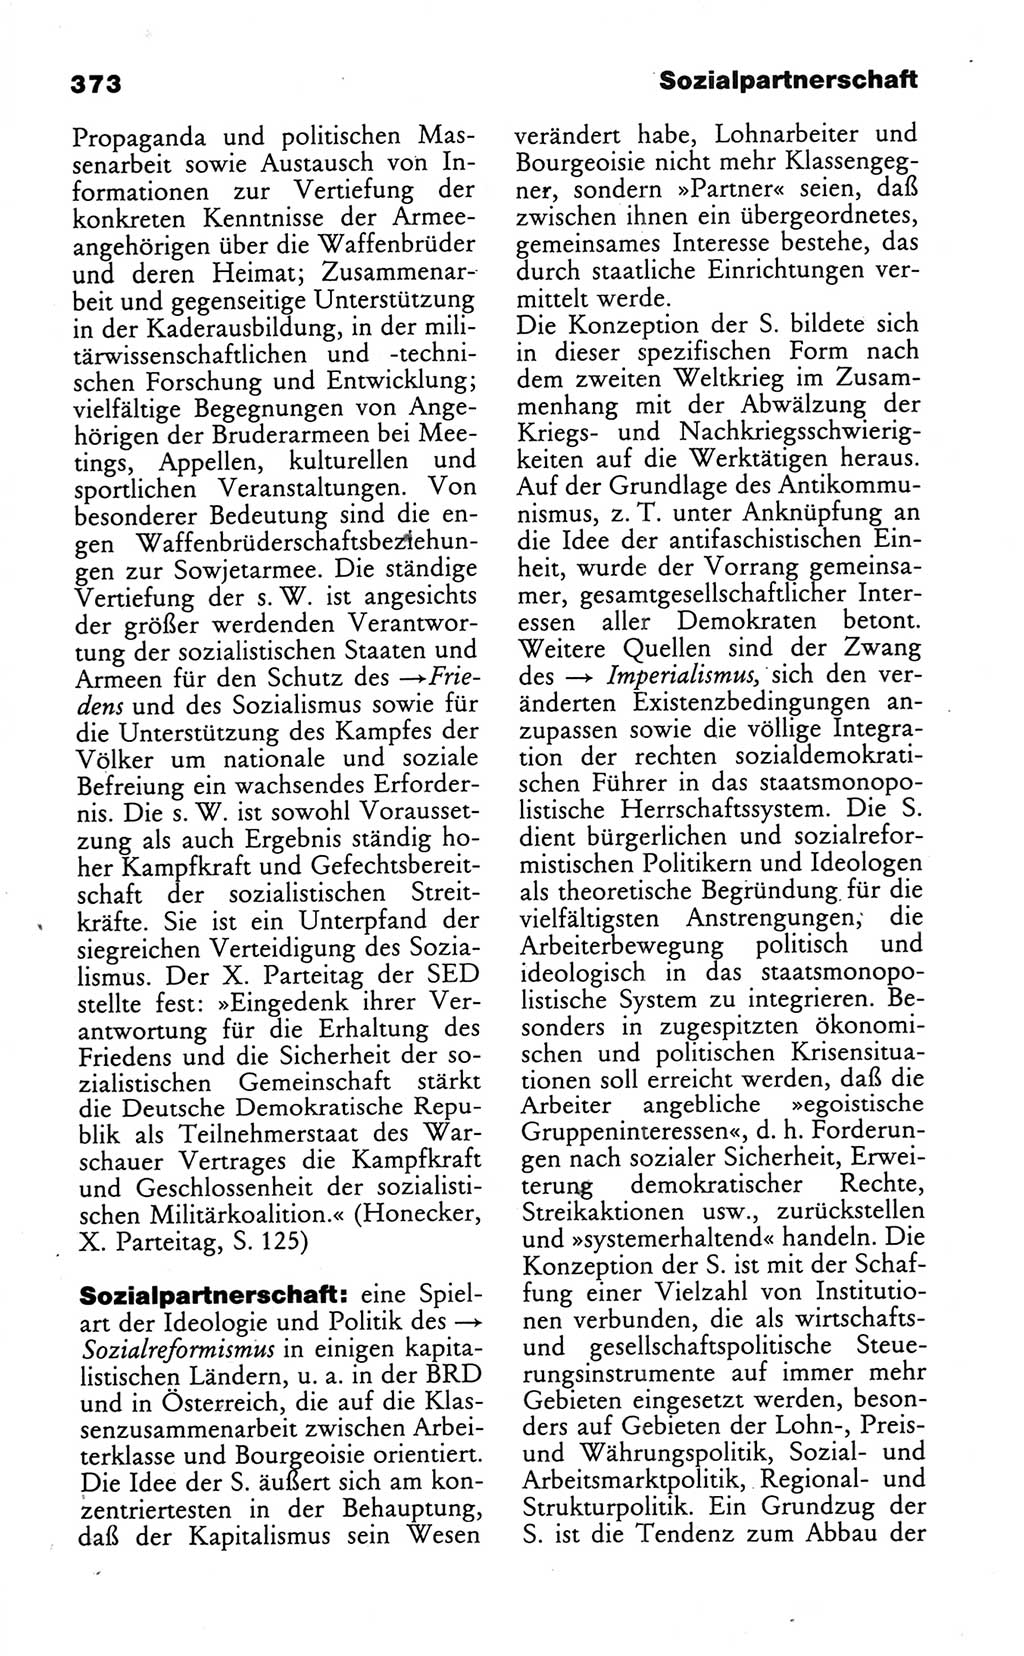 Wörterbuch des wissenschaftlichen Kommunismus [Deutsche Demokratische Republik (DDR)] 1986, Seite 373 (Wb. wiss. Komm. DDR 1986, S. 373)